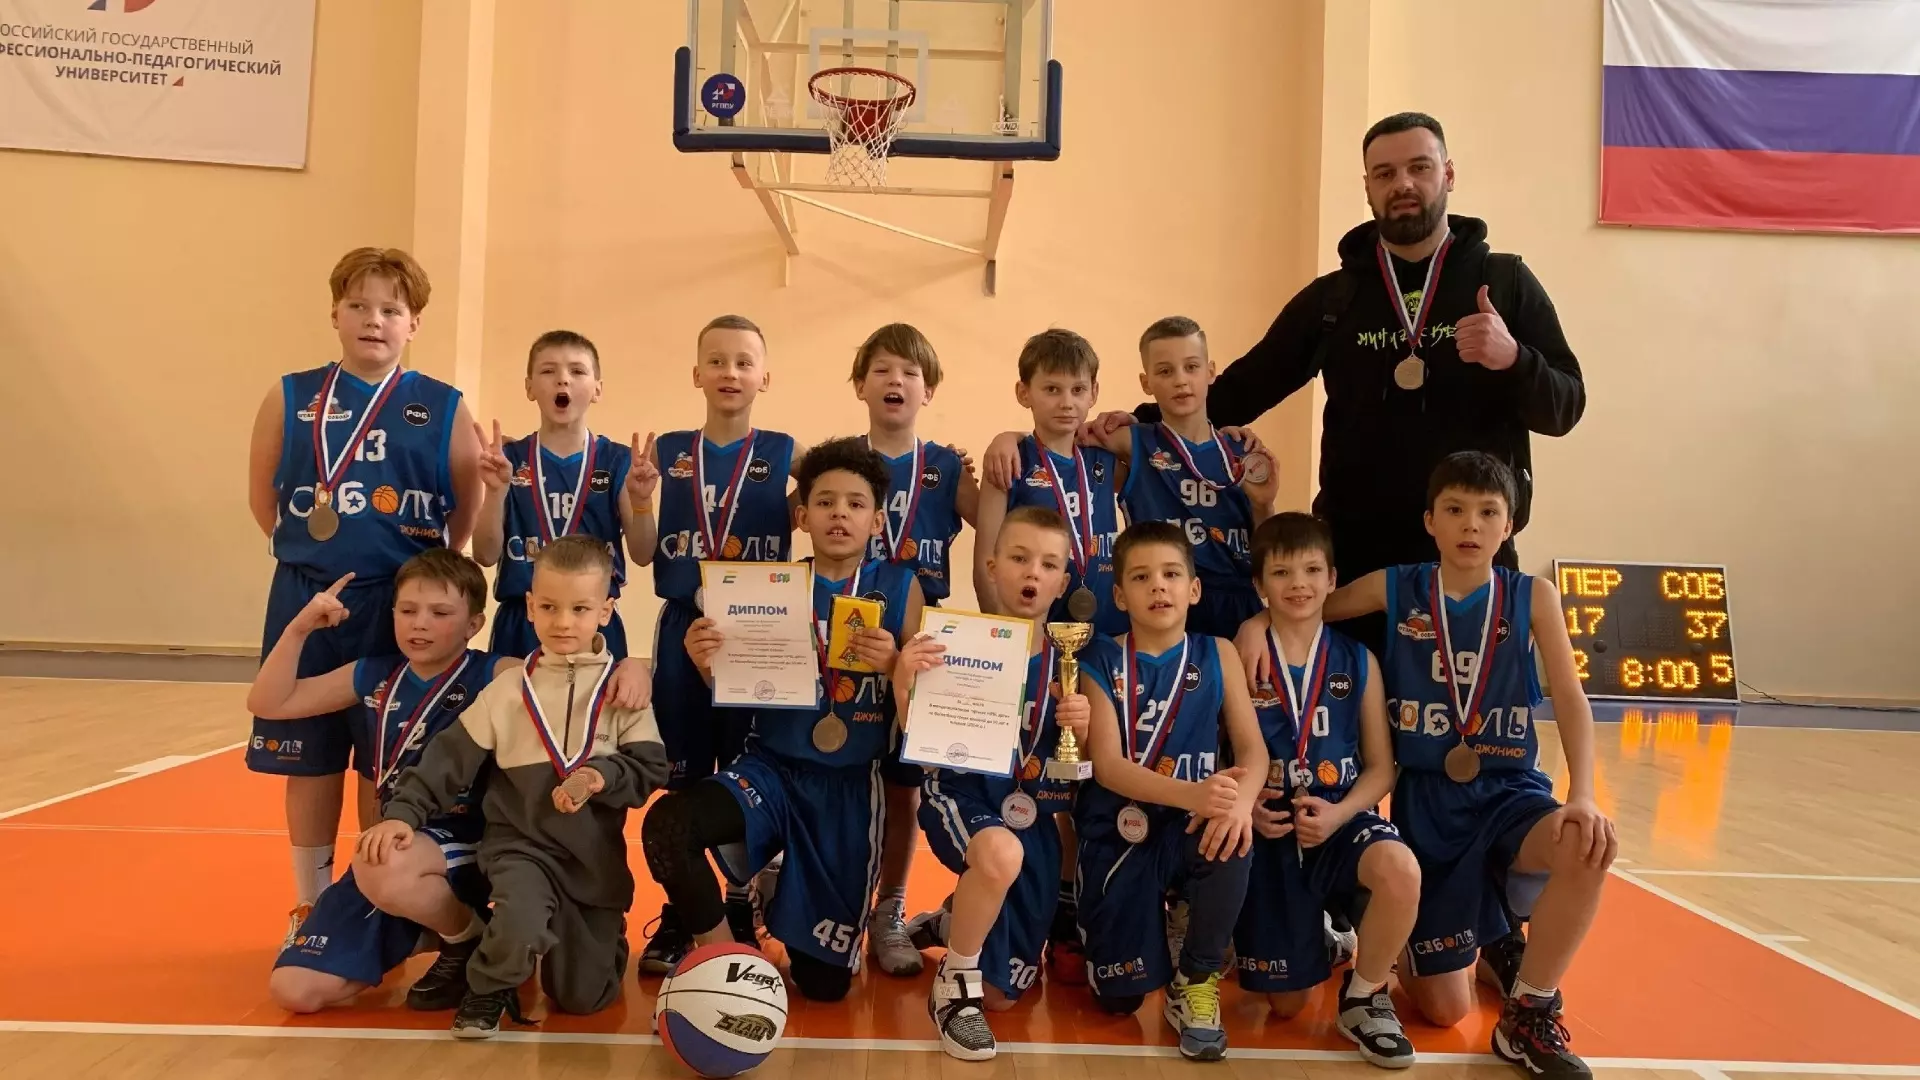 Спортсмены из Нижнего Тагила заняли 3 место на турнире в Екатеринбурге